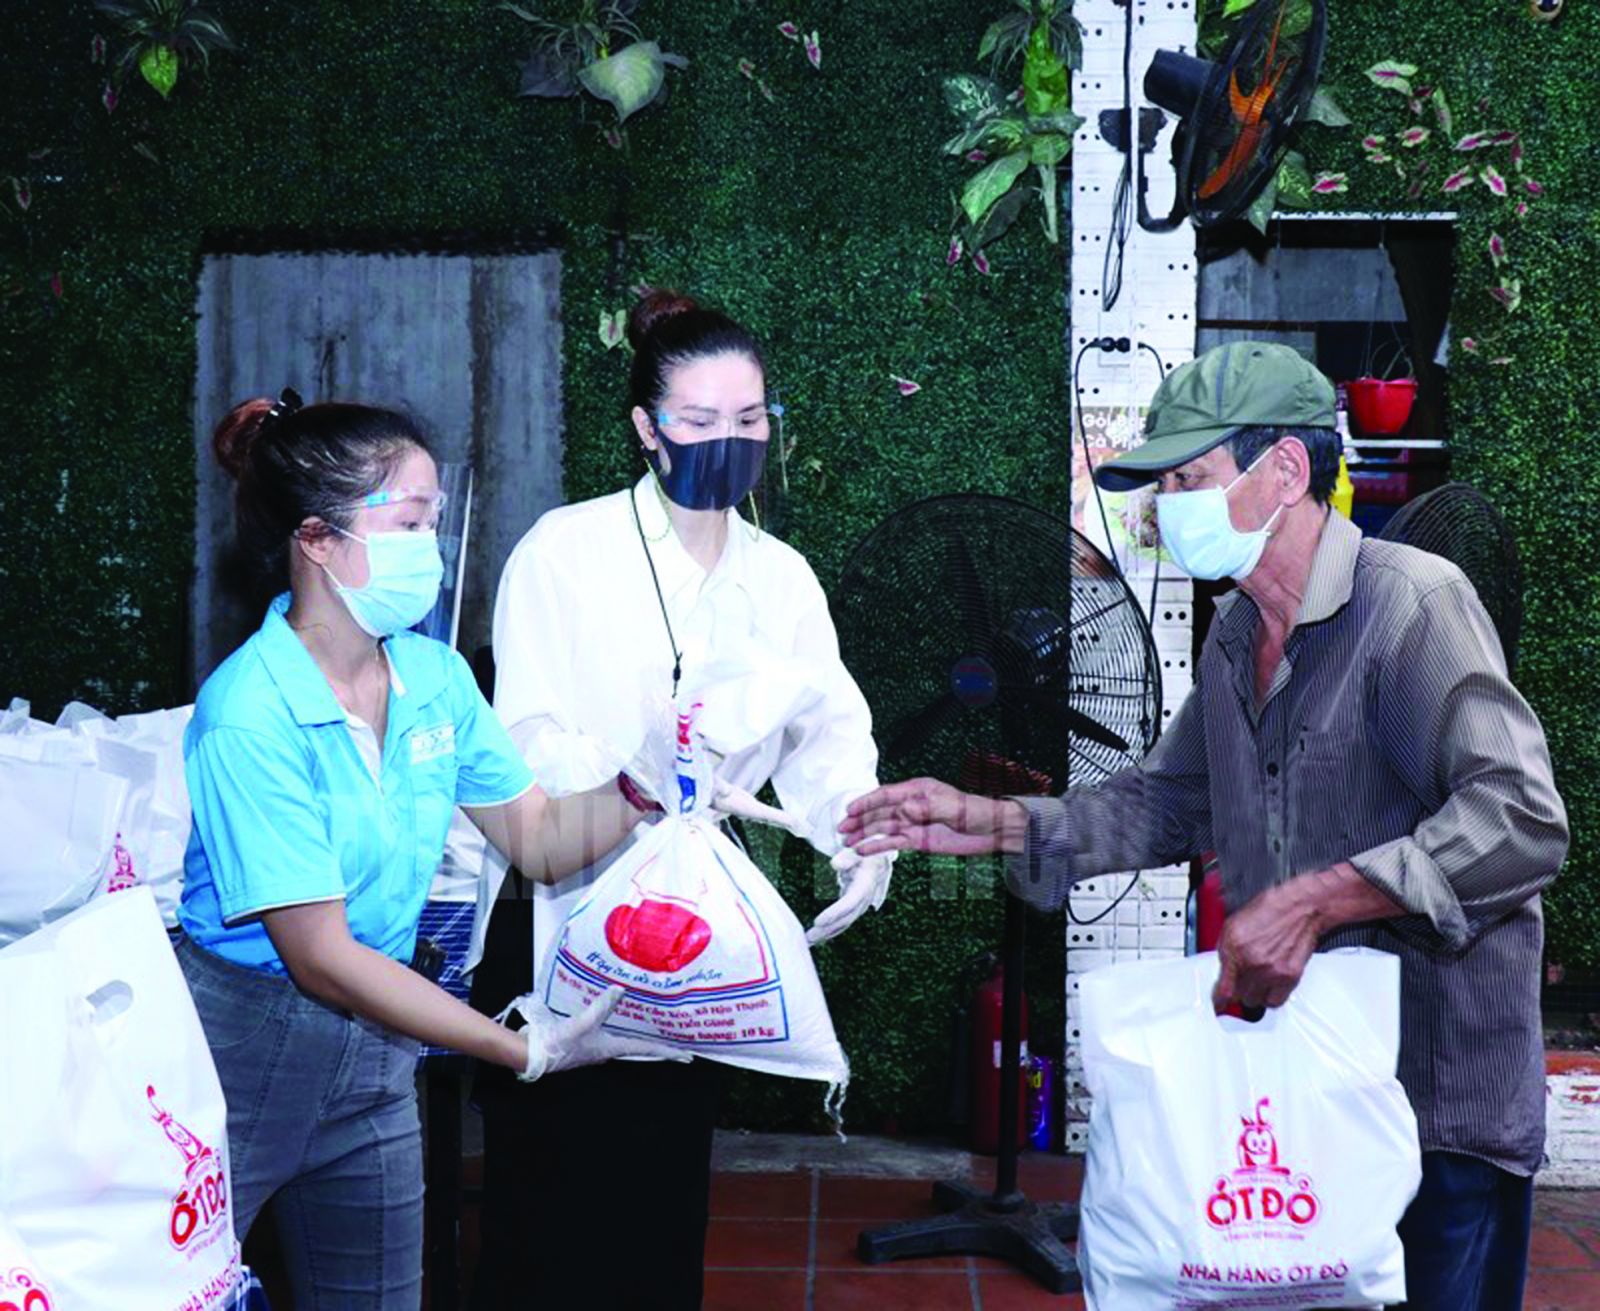  Doanh nhân kiều bào tại Thành phố Hồ Chí Minh tổ chức chương trình “Chia sẻ yêu thương trong đại dịch COVID-19”. Ảnh: Xuân Khu